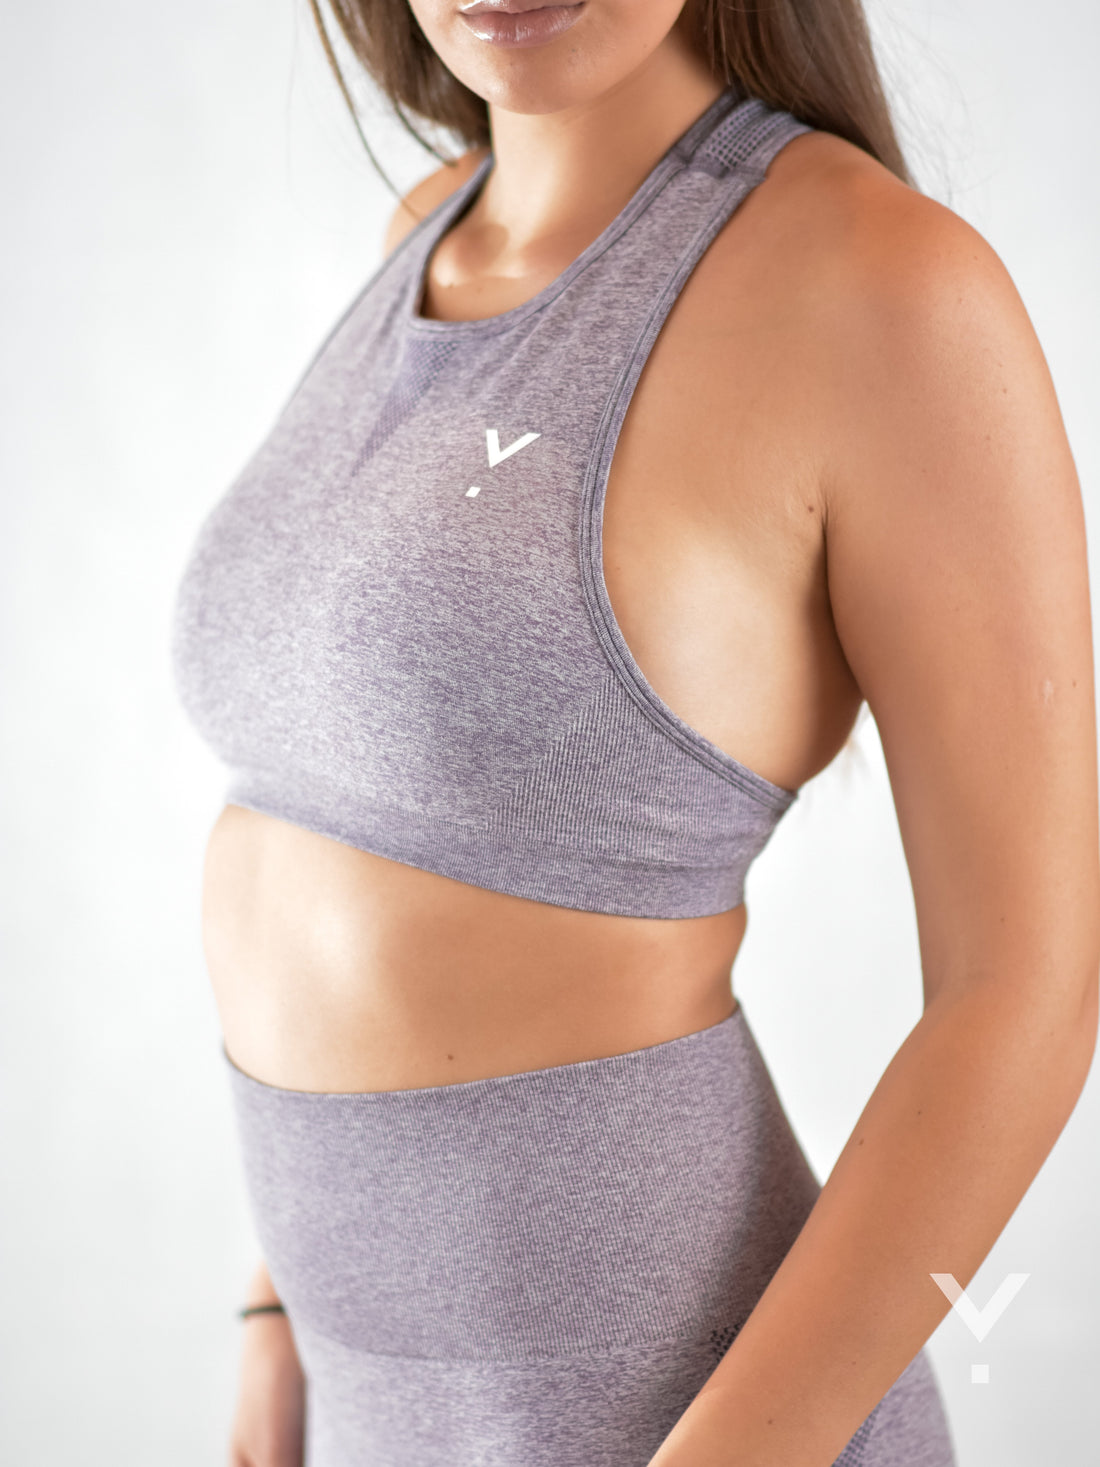 Women's Sports Bras - Crop Tops & Workout Wear